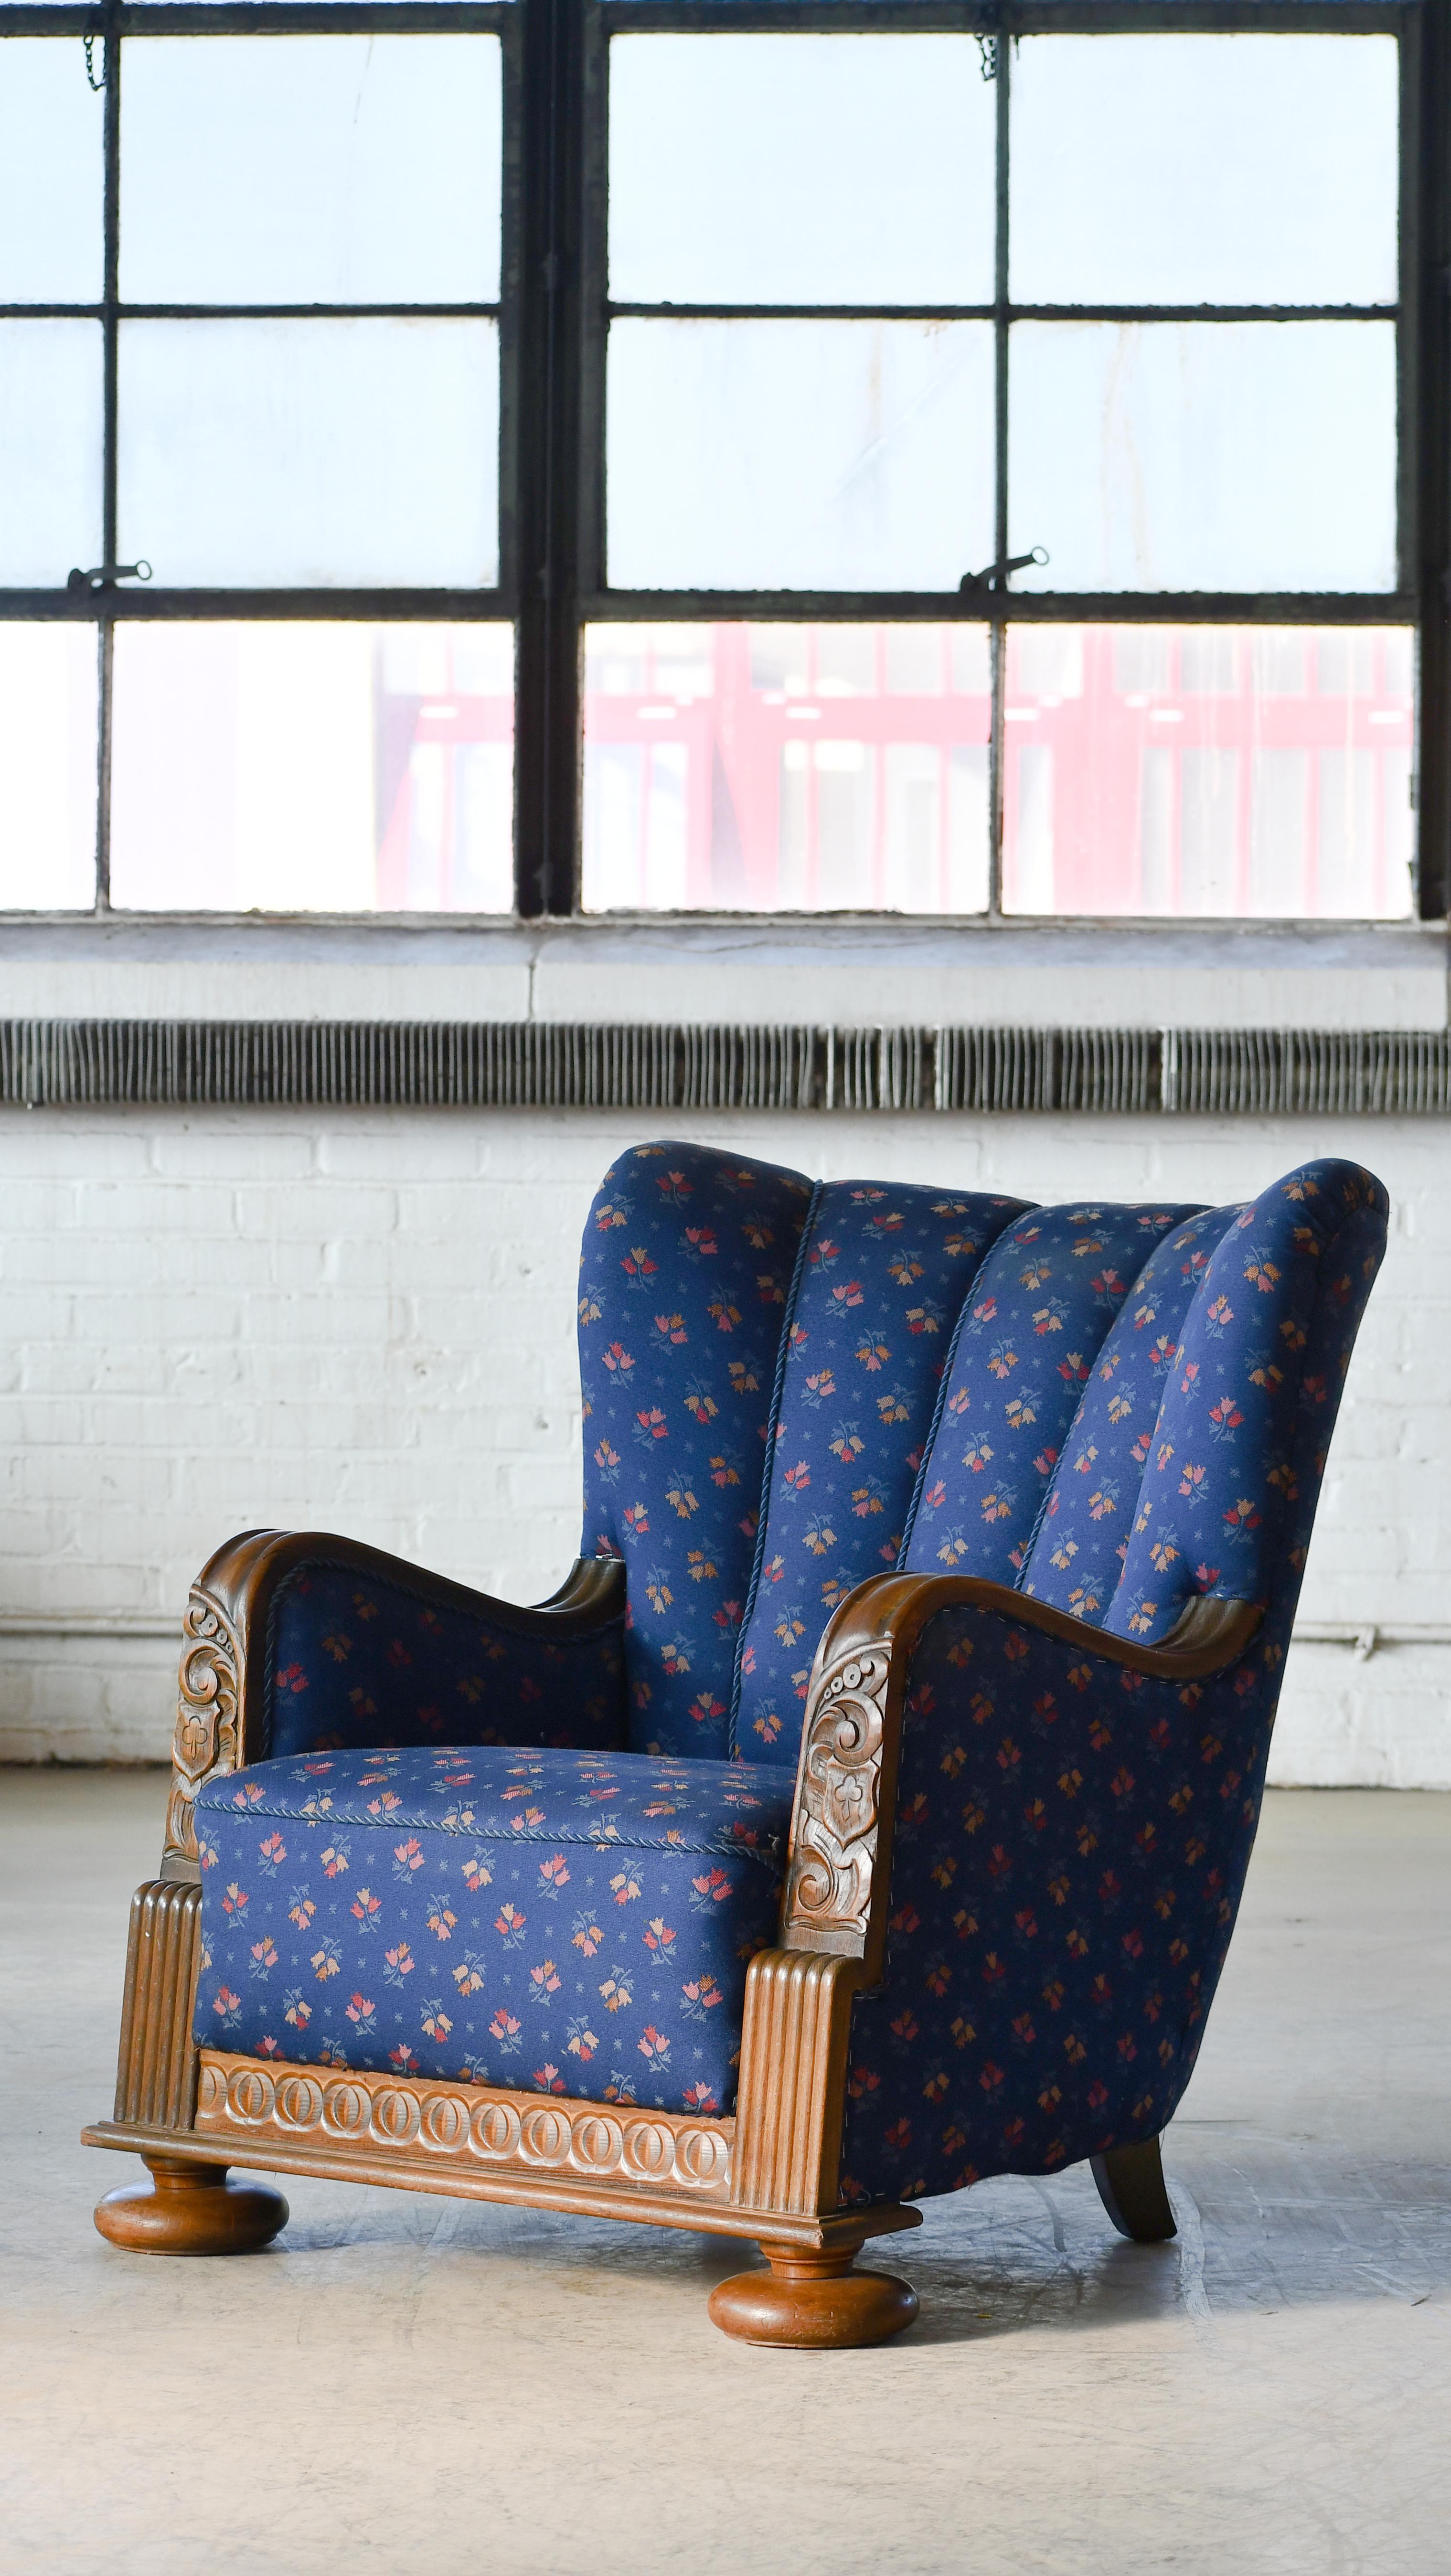 Rare et très cool fauteuil club danois de grande taille de la fin de la période Art Déco du milieu à la fin des années 1930. Très rare. Magnifiques montants et accoudoirs en chêne massif sculptés à la main. Le tissu de laine bleue et le padding ont